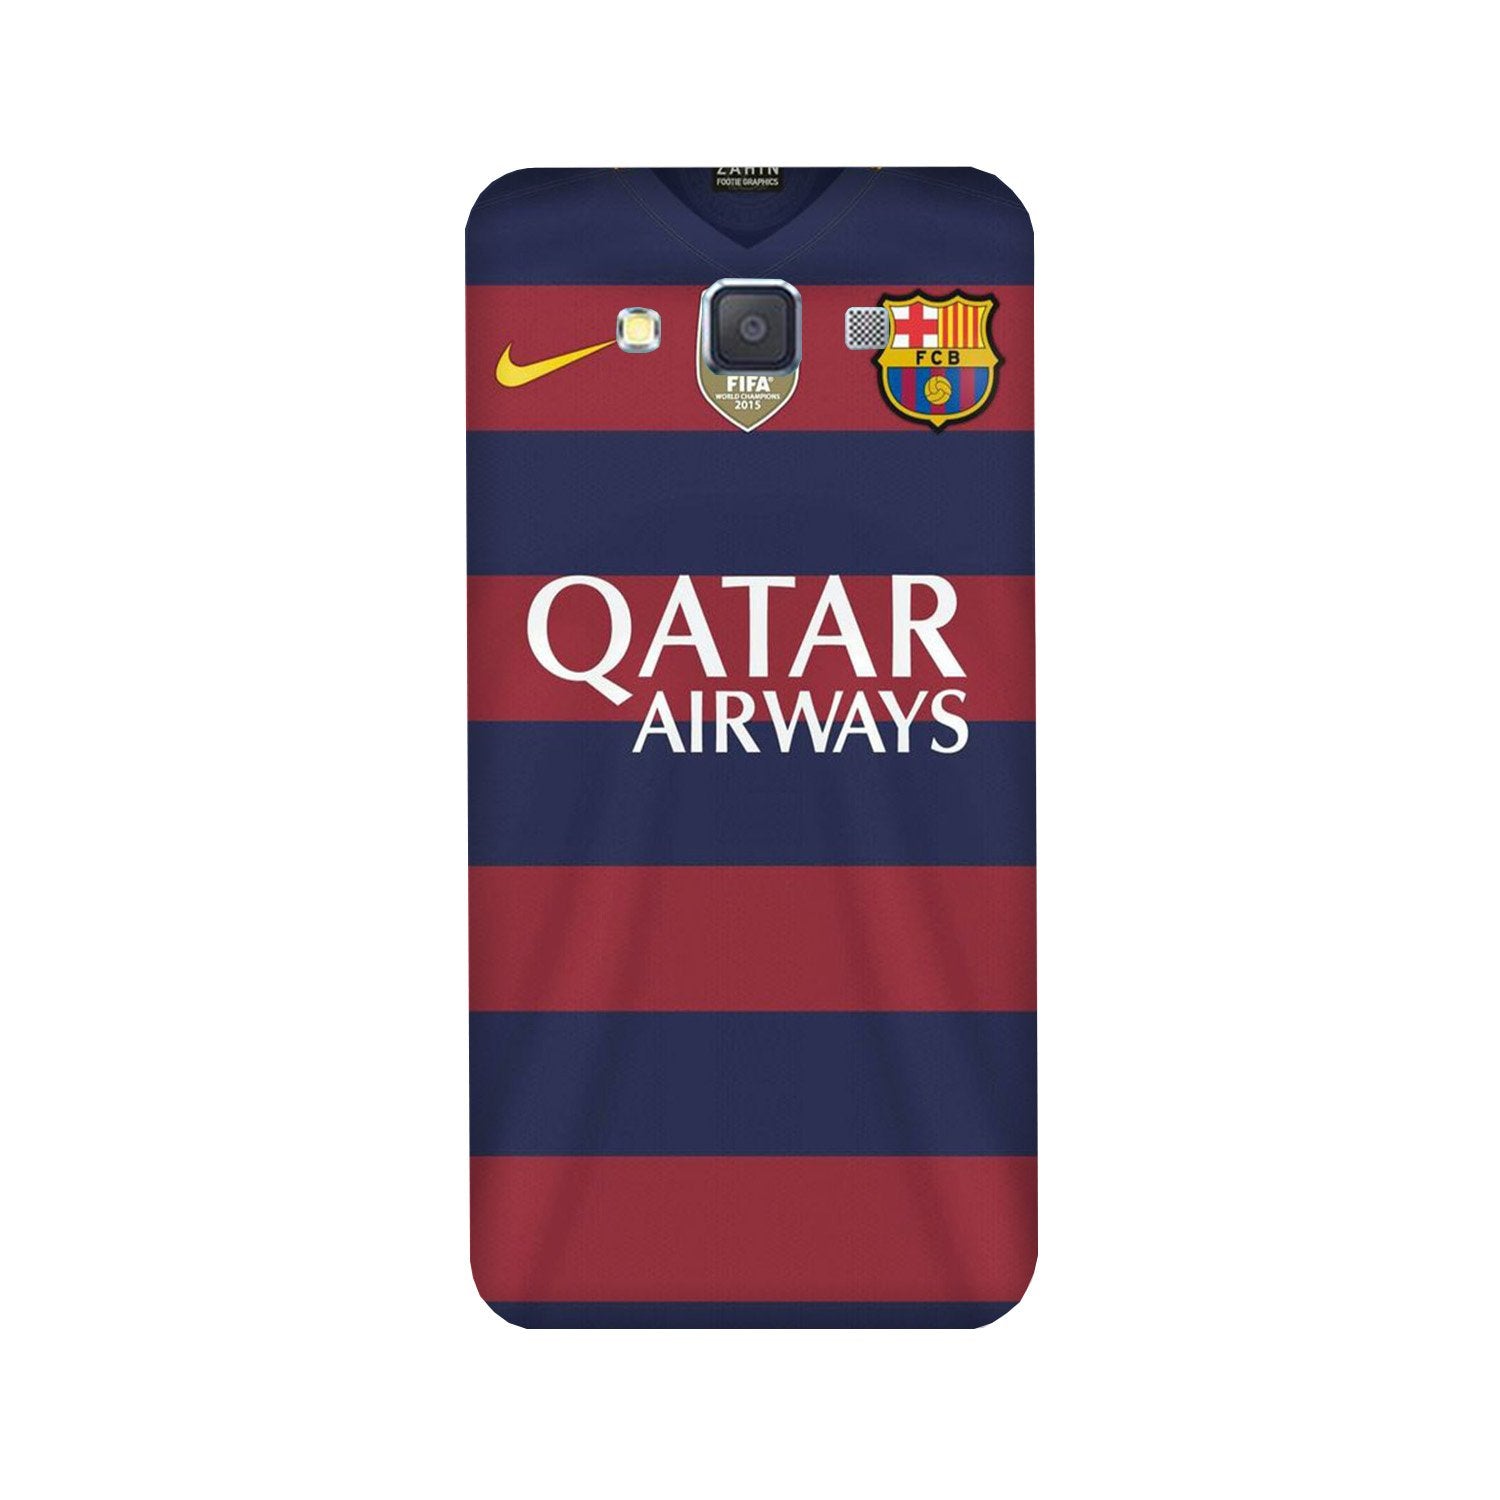 Qatar Airways Case for Galaxy A5 (2015)  (Design - 160)